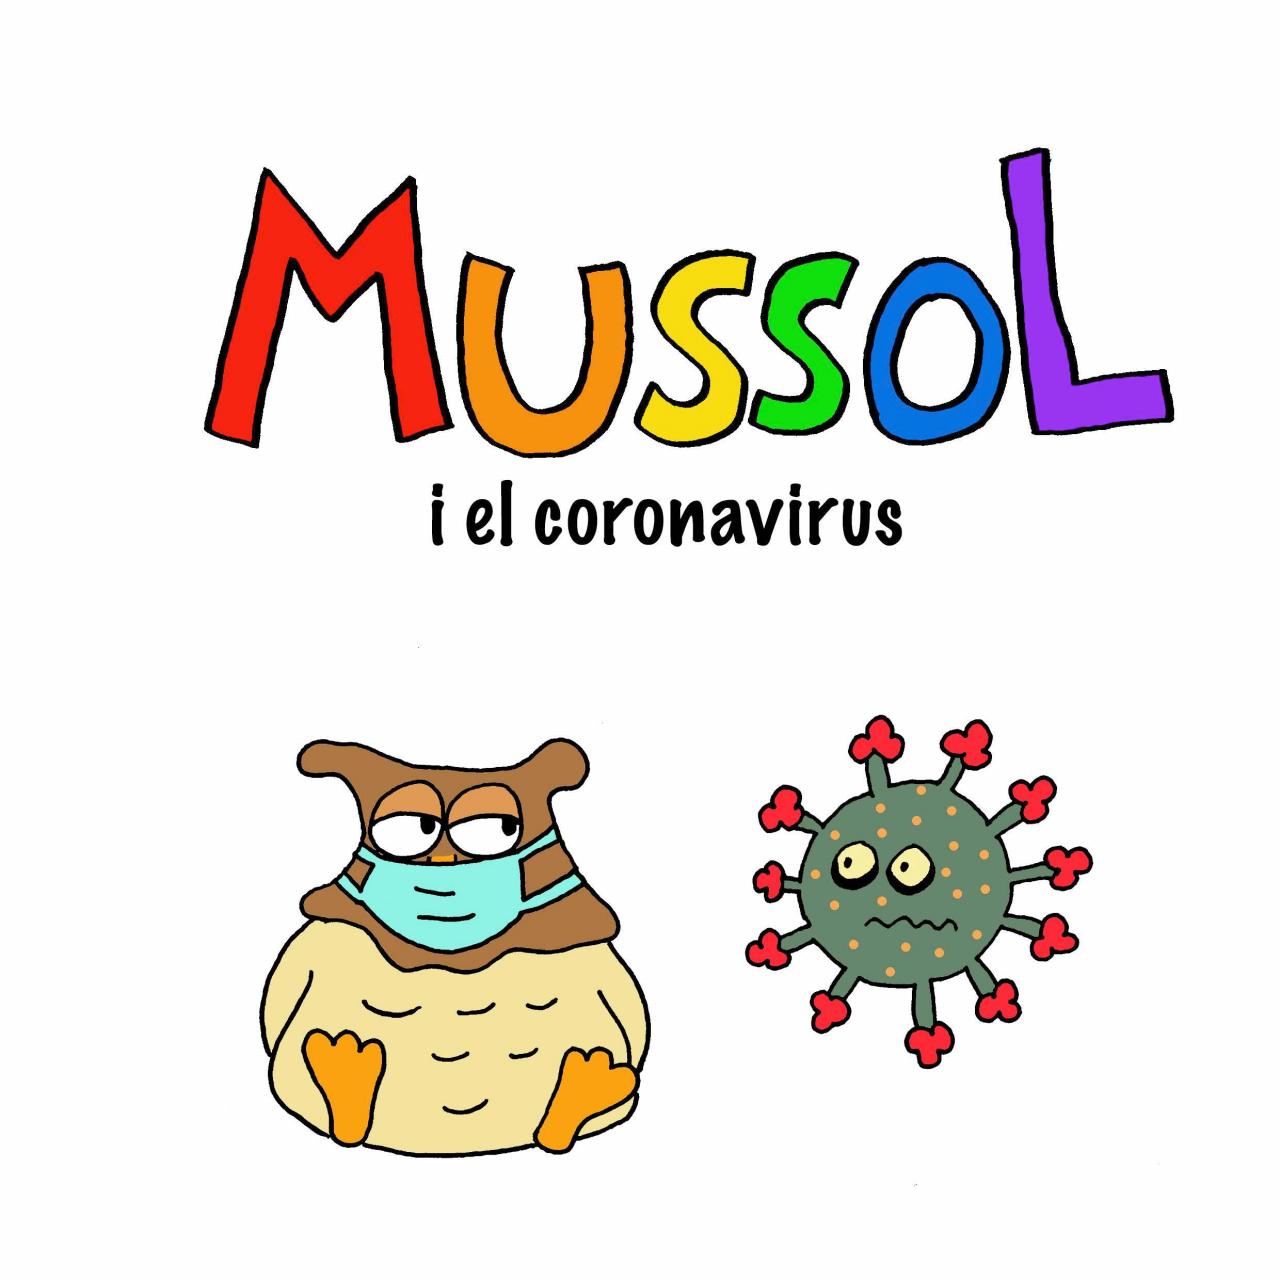 Resultat d'imatges per a "mussol i el coronavirus"